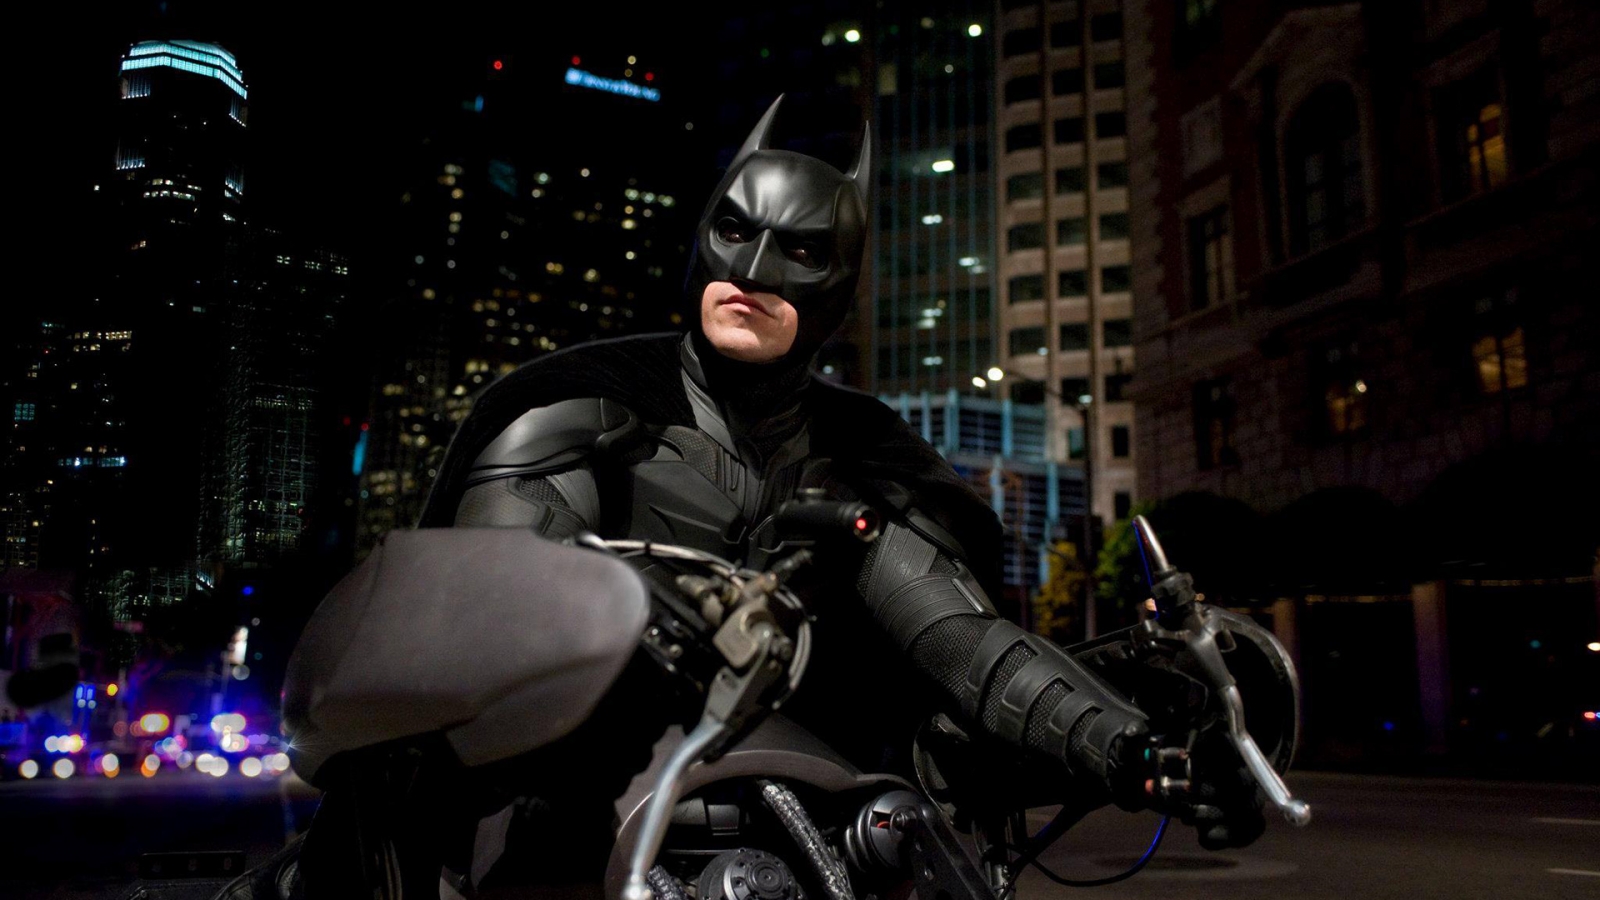 Batman on Bike for 1600 x 900 HDTV resolution